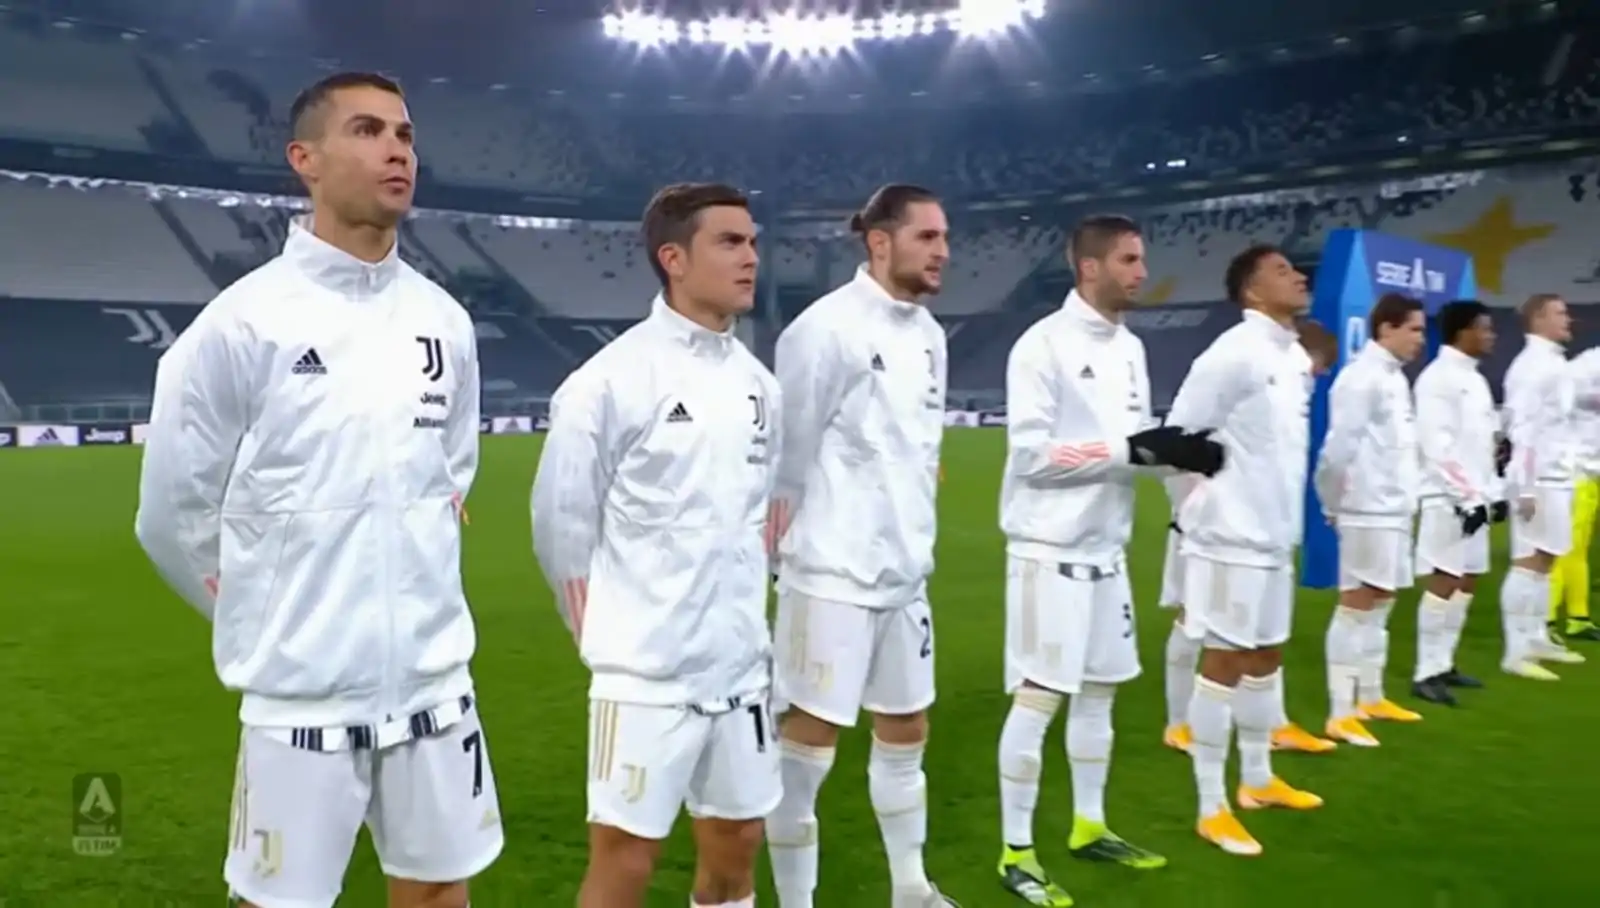 CorSport – Stasera in scena il derby d’Italia e Ronaldo sfida Lukaku, è “La notte dei Giganti”